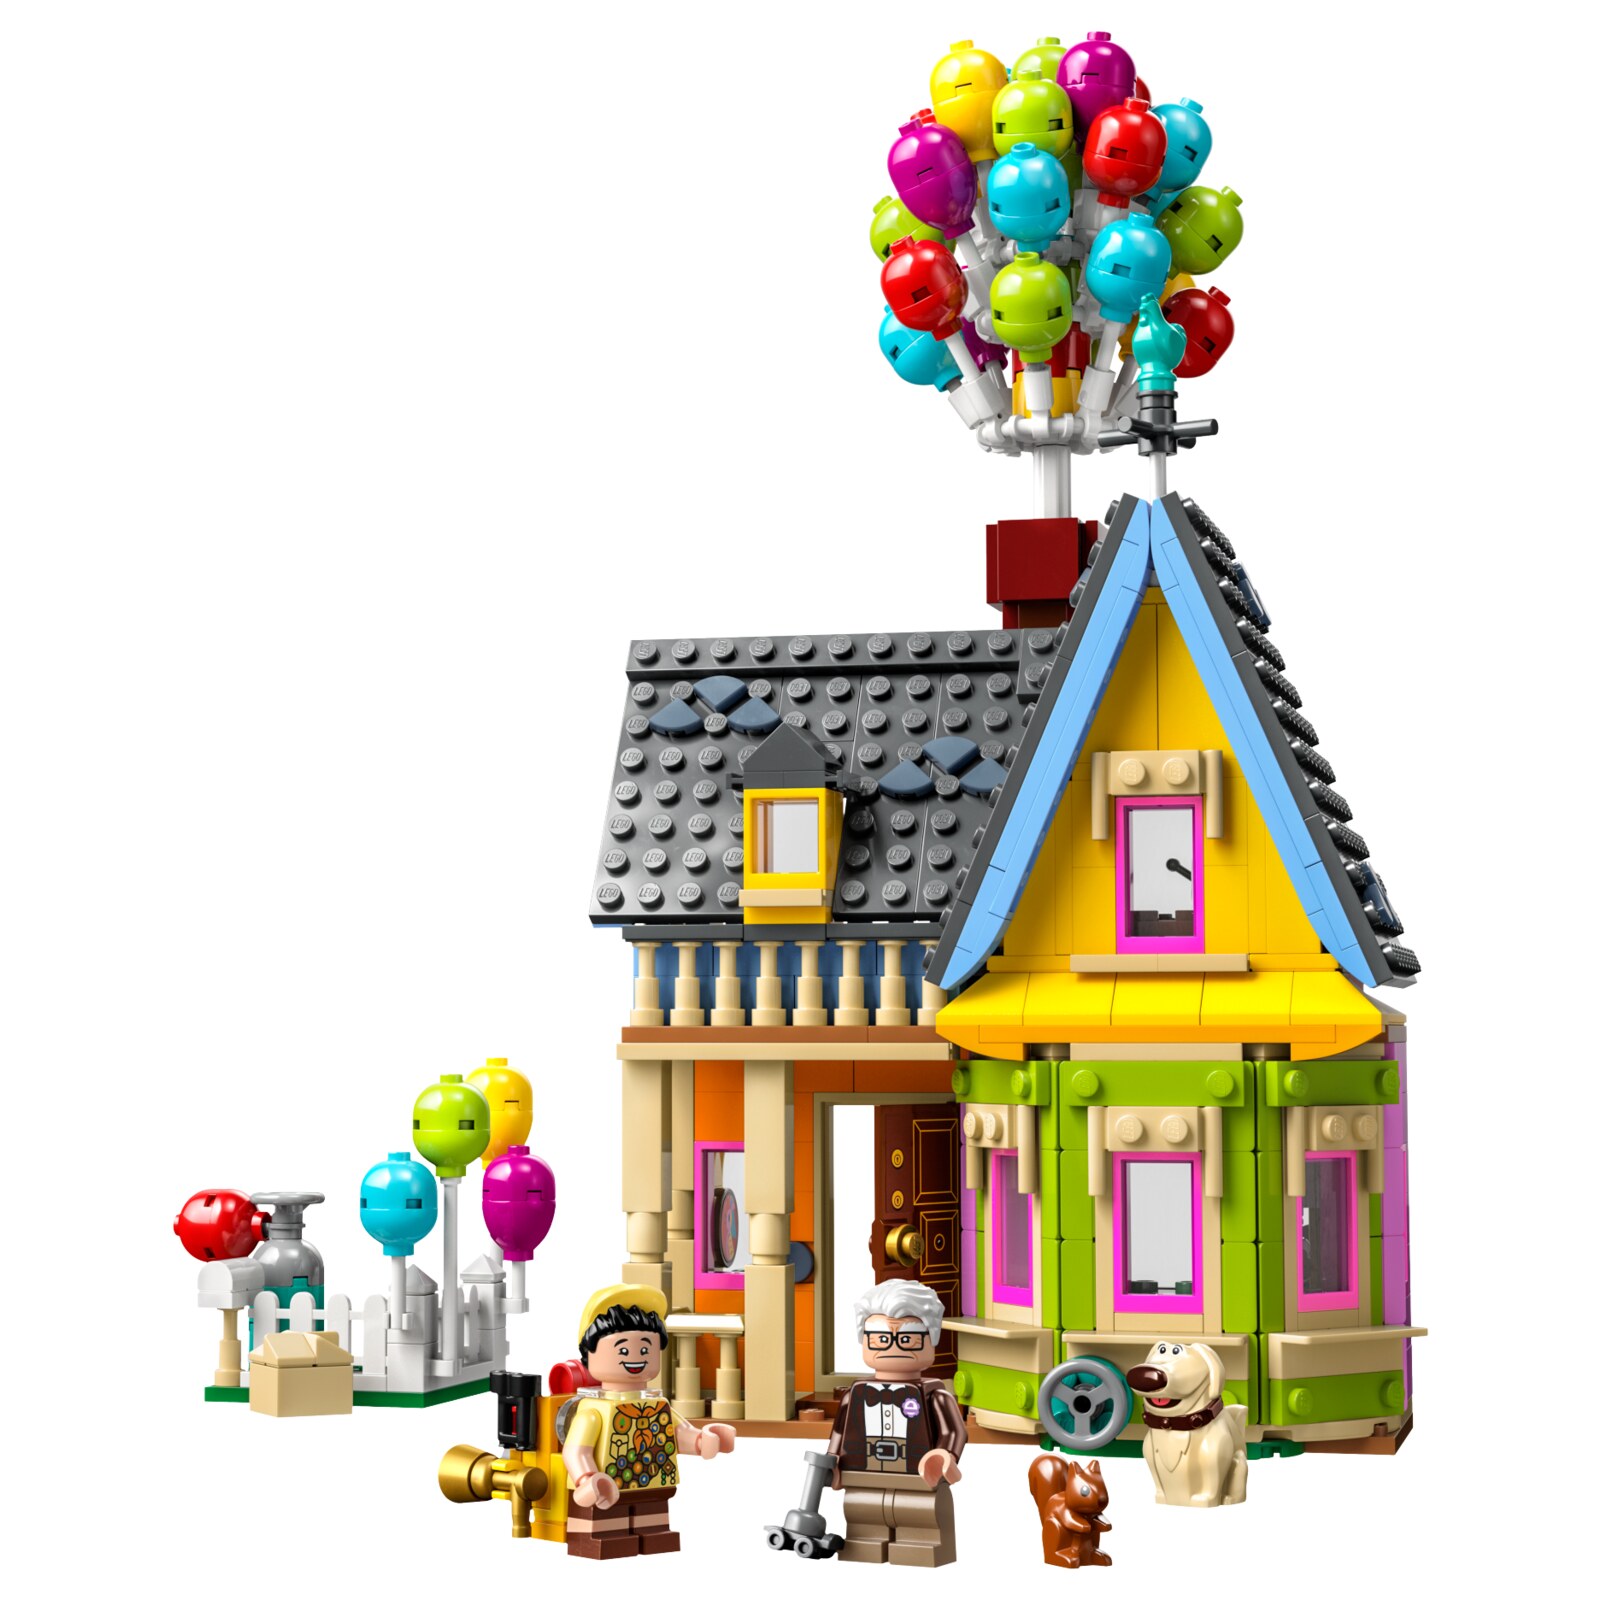 Конструктор LEGO Disney Дом из мультфильма Вверх, 598 деталей, 43217